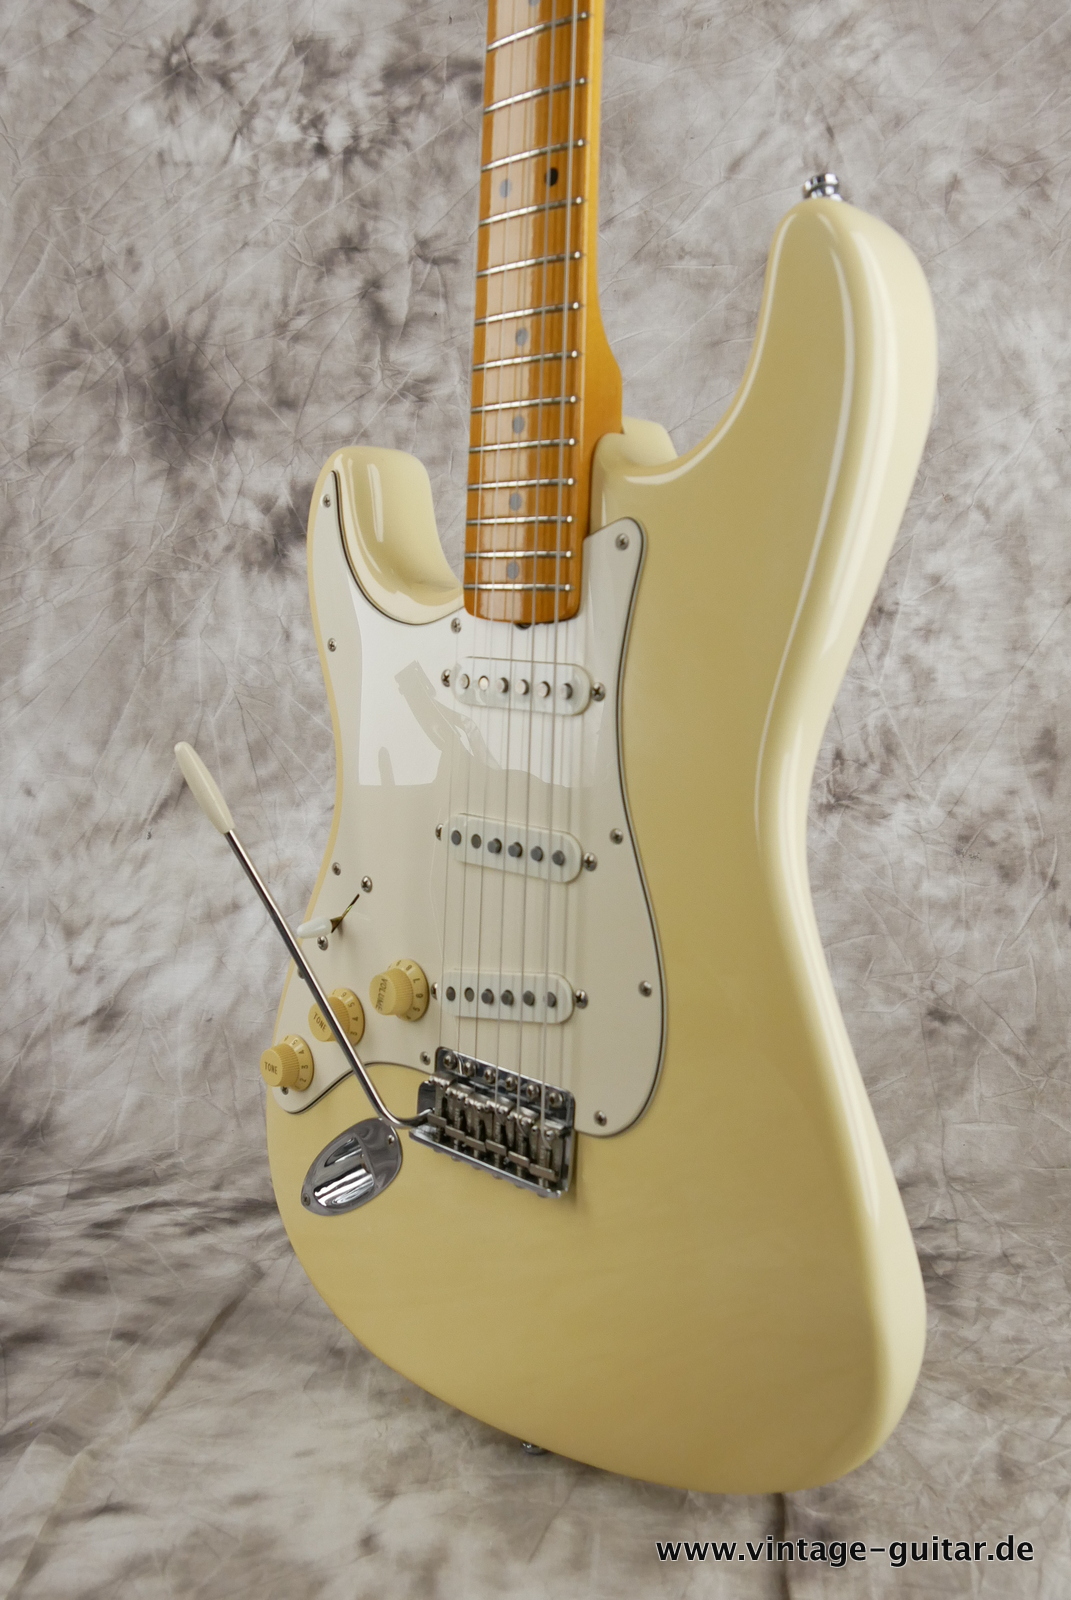 Fender_Stratocaster_Jimi_Hemdrix_Tribute_1997_olympic_white-010.JPG